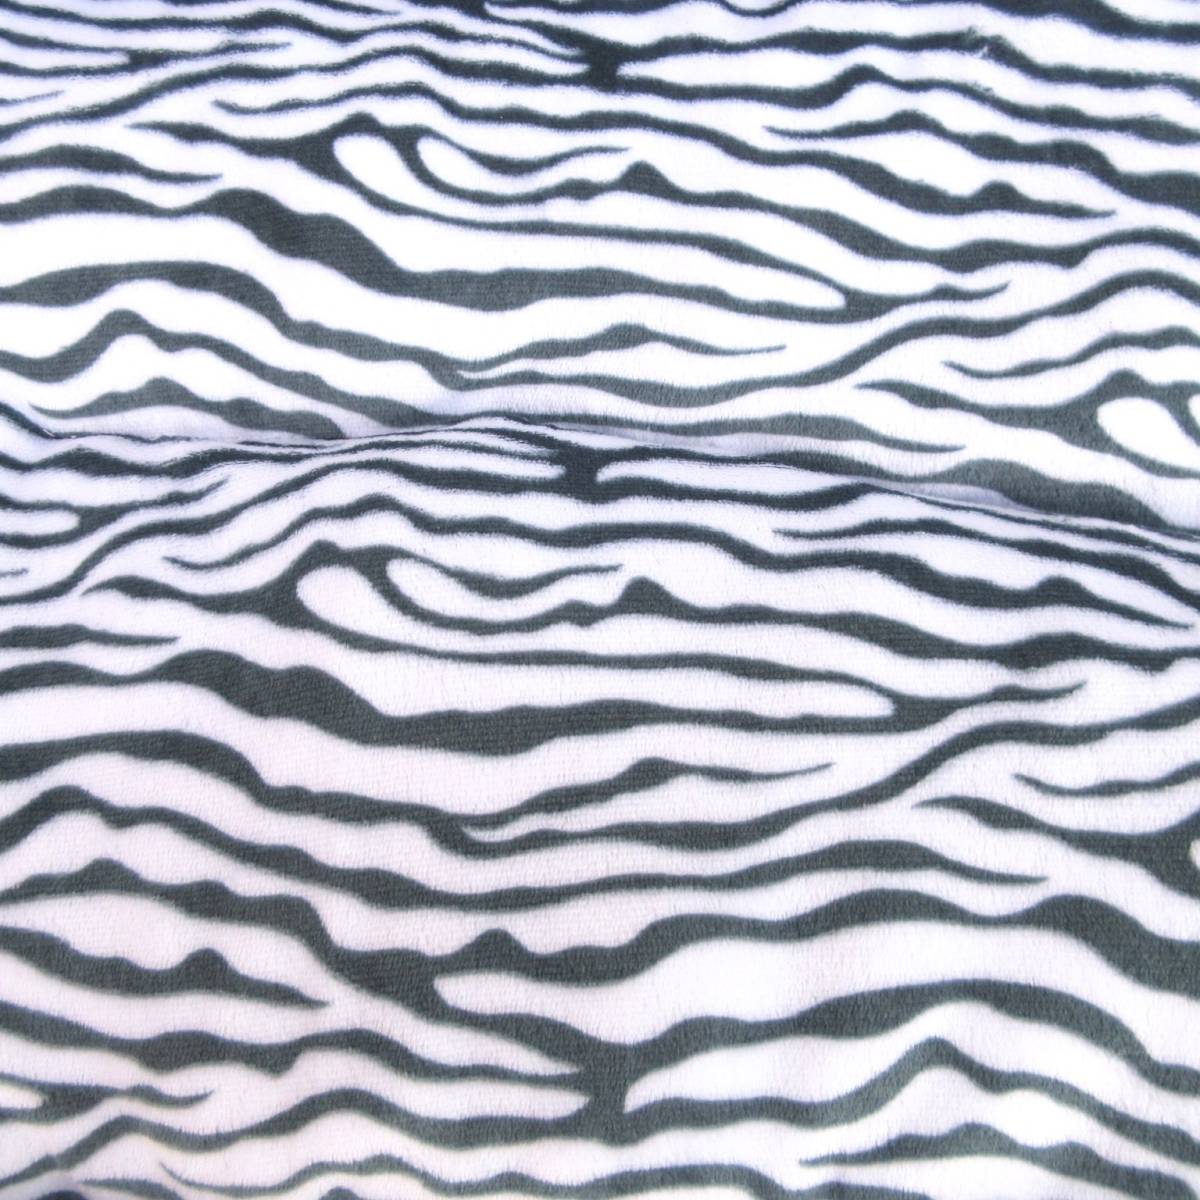  цена снижена! новый товар фланель квадратное домашнее животное bed * домашнее животное диван M размер Zebra рисунок серый коврик круг мытье мягкость теплый 